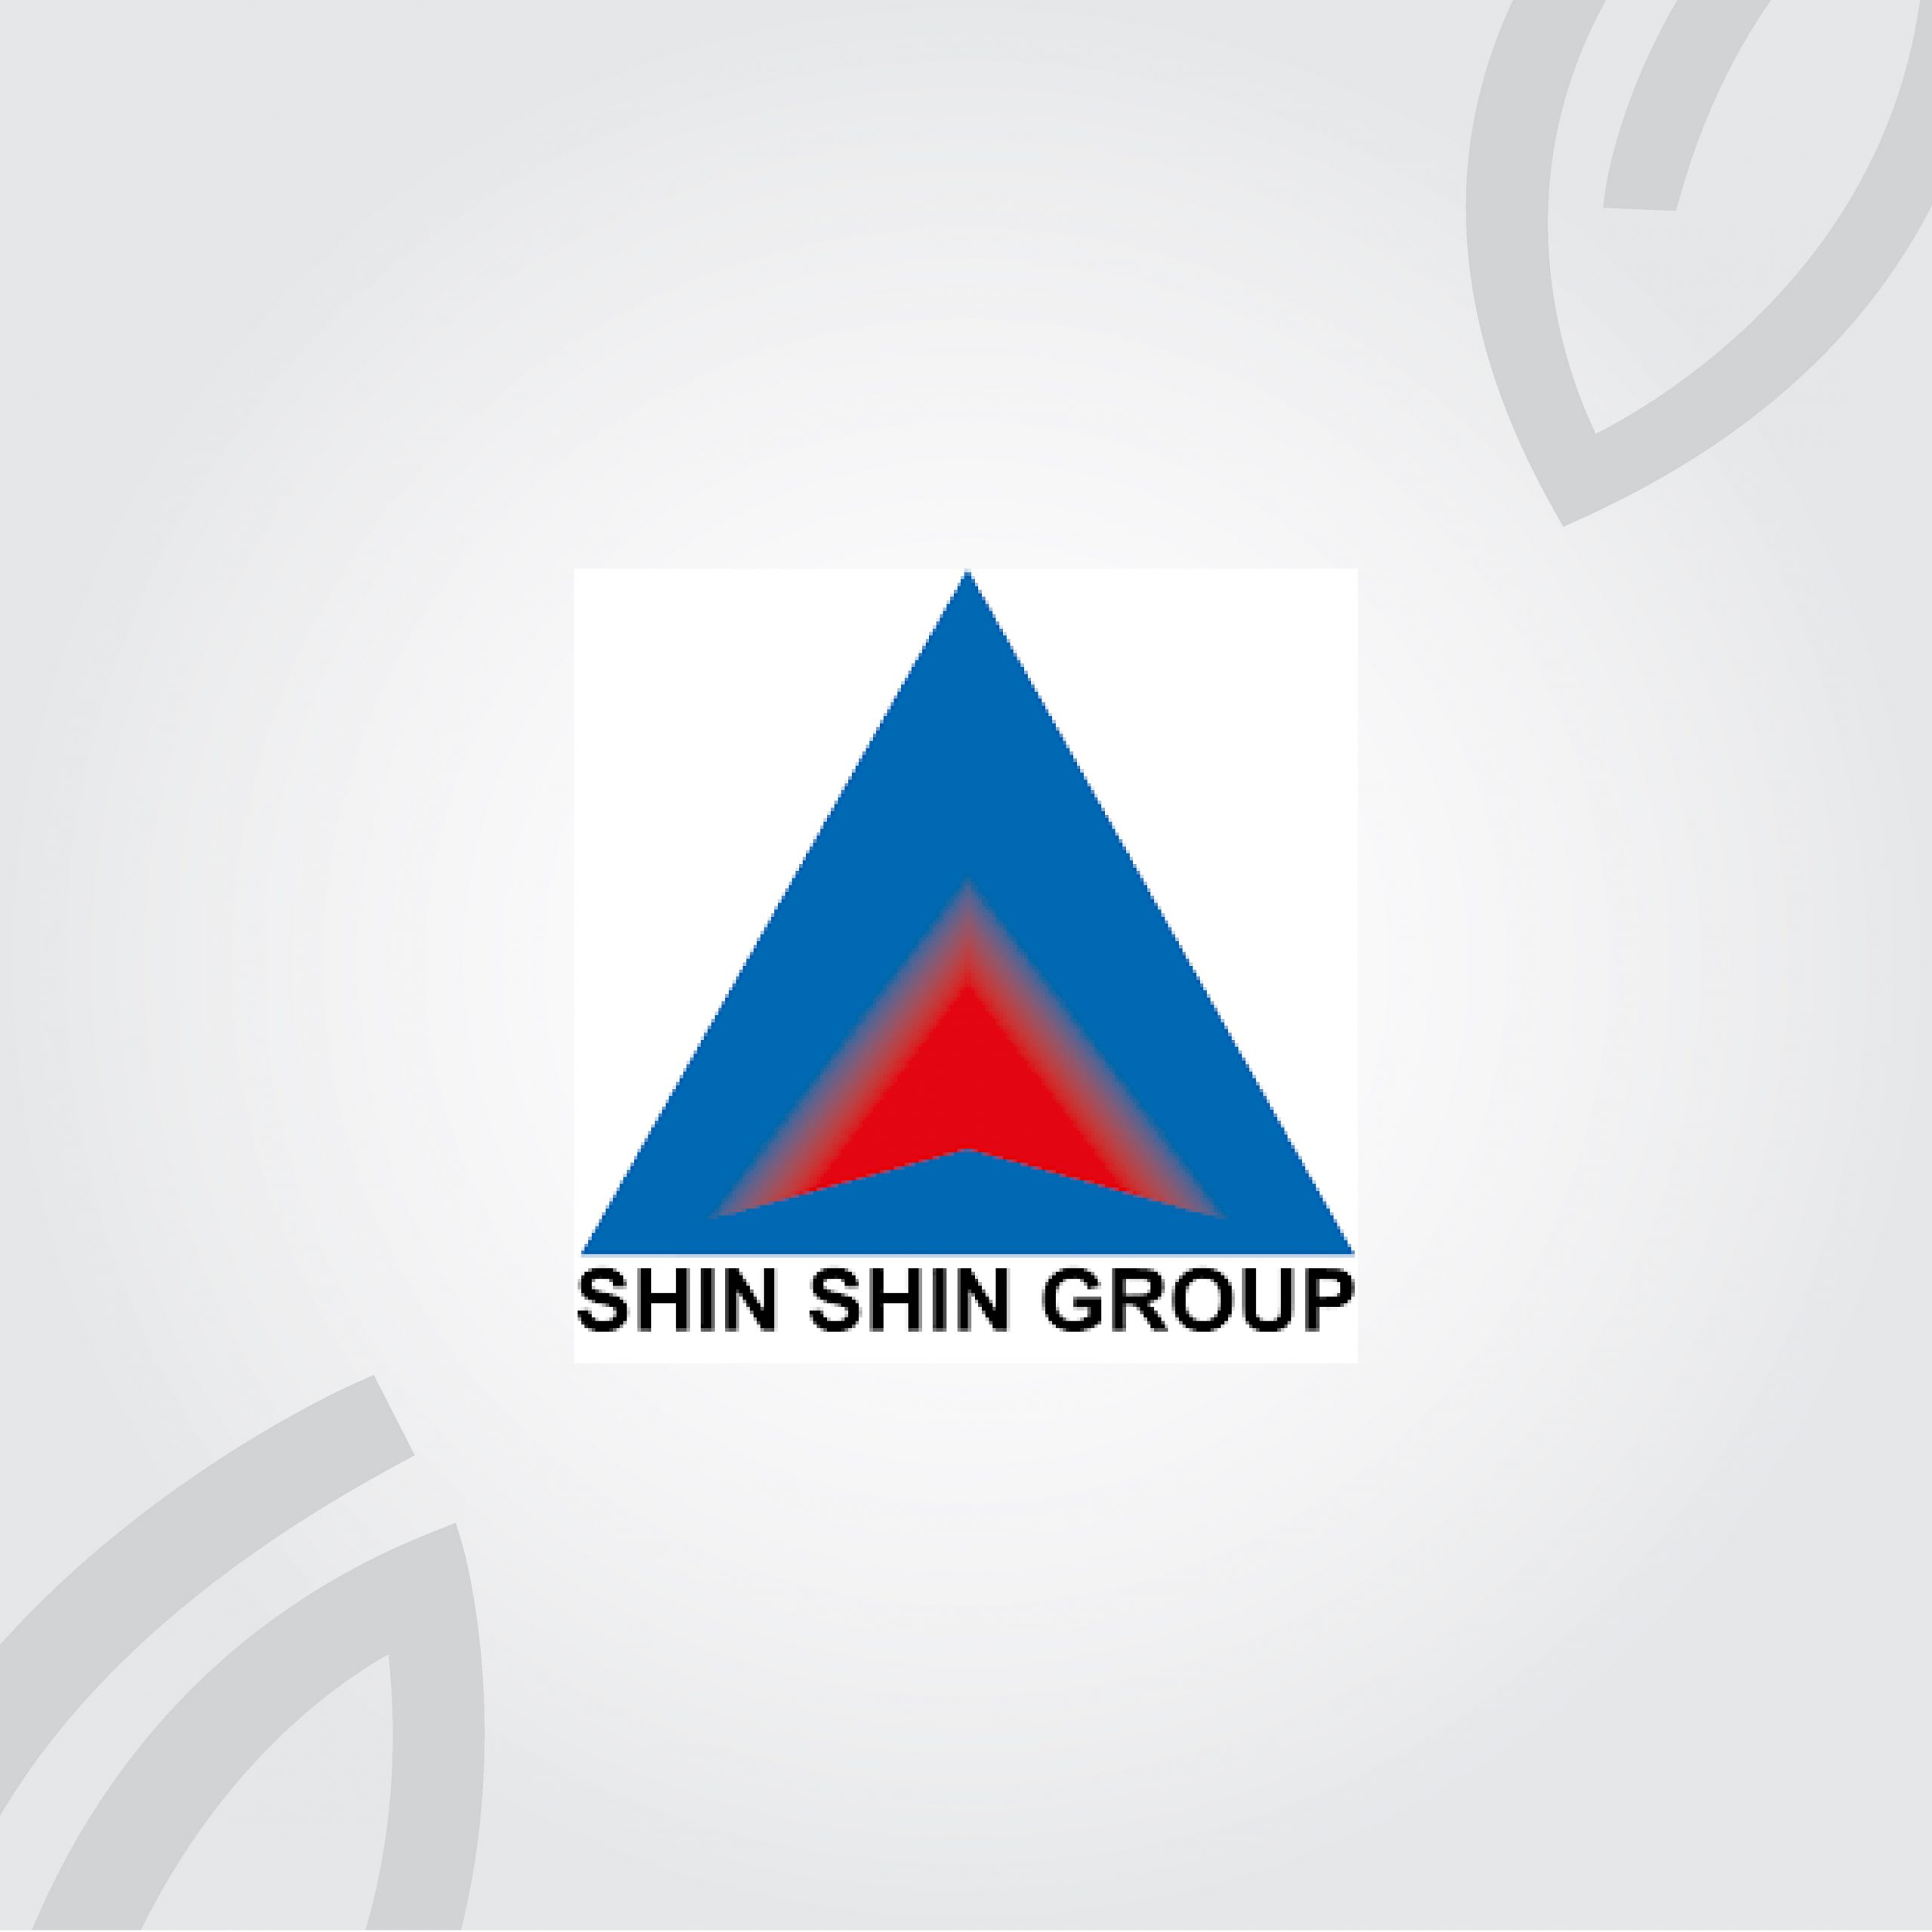 Shin Shin Group